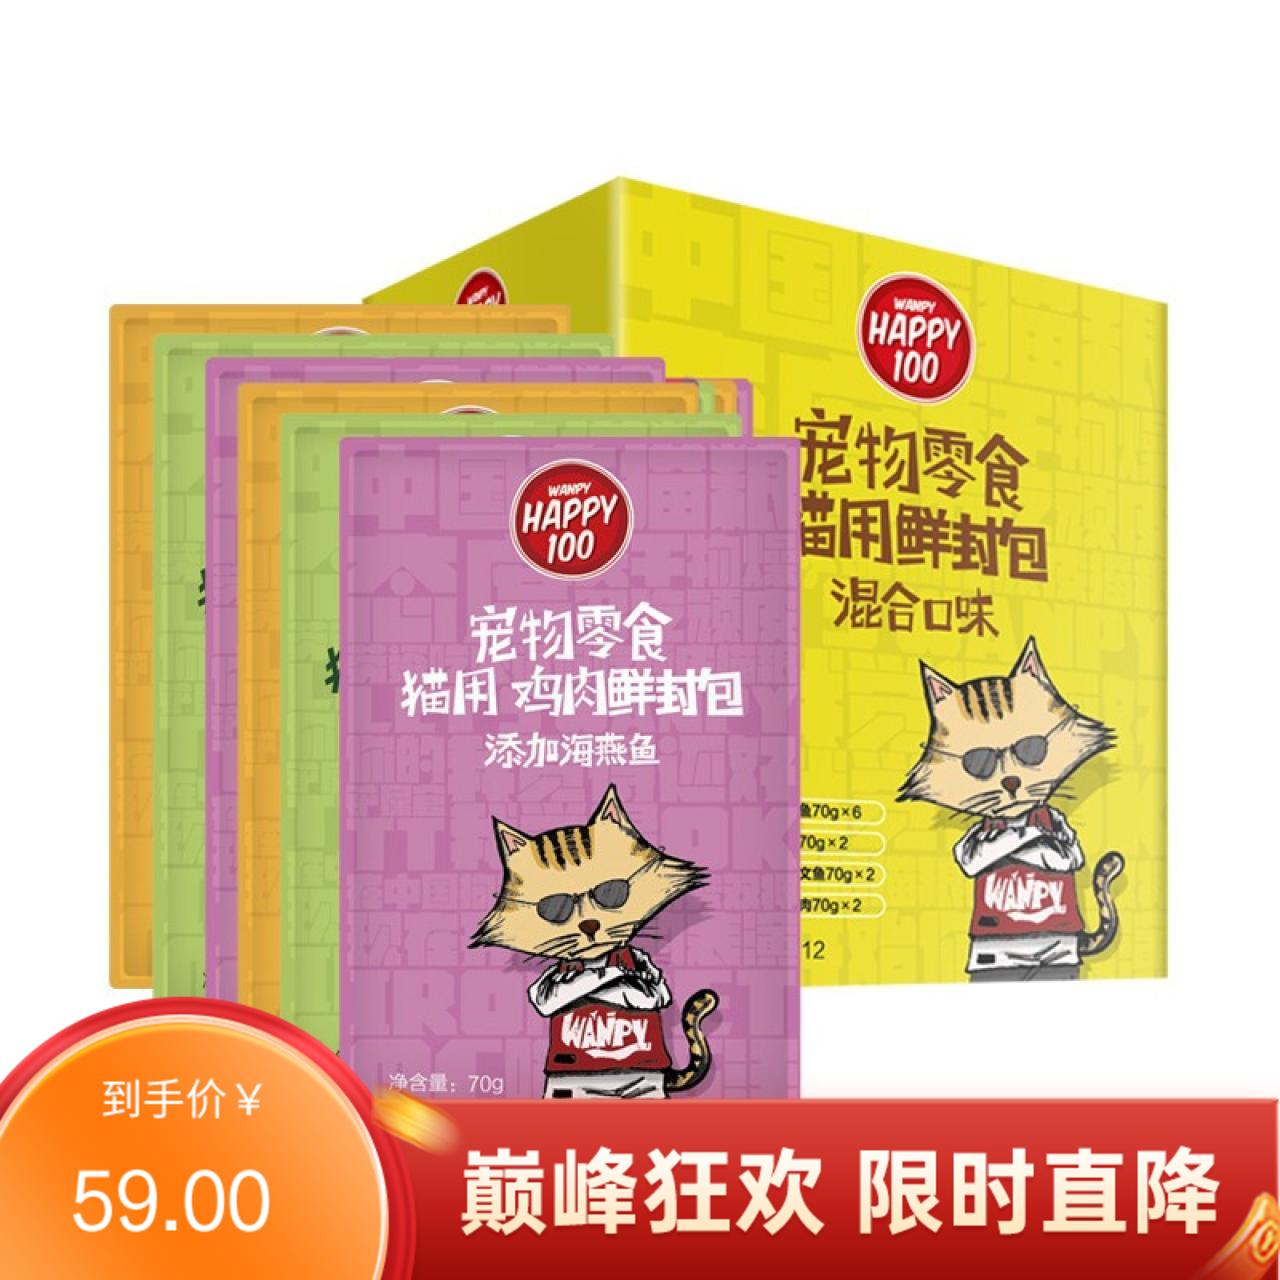 【36包】Wanpy顽皮 Happy100猫用鲜封包 混合口味 70g/包